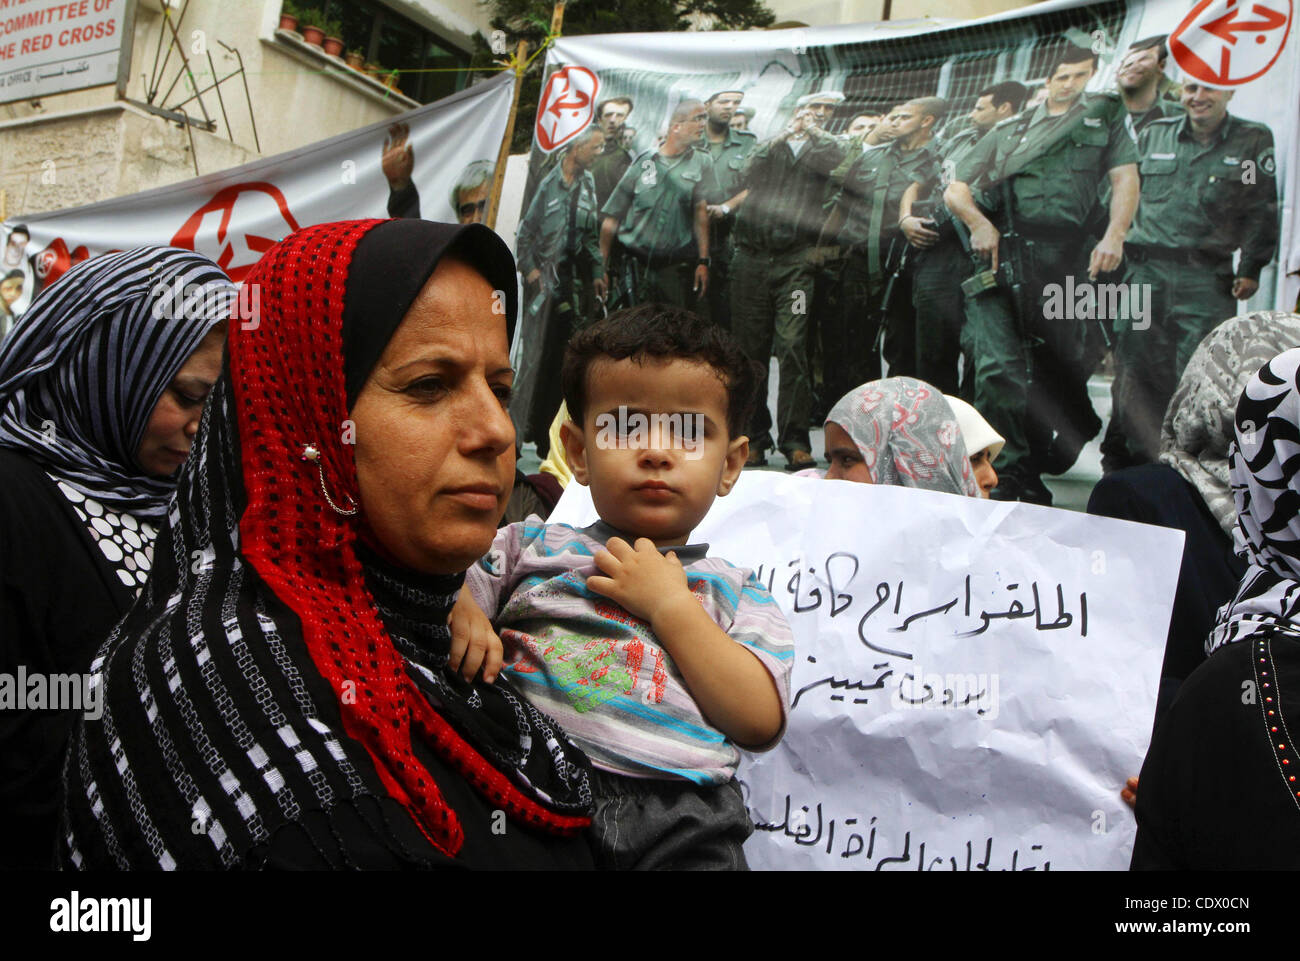 Palästinensische Frauen nehmen Teil an einer Protestkundgebung in Gaza-Stadt 6. Oktober 2011, zur Solidarität mit den palästinensischen Gefangenen in israelischen Gefängnissen gehalten. Hunderte von Palästinensern in israelischen Gefängnissen haben einen Hungerstreik zu protestieren gegen die Verschlechterung der Bedingungen in den Gefängnissen, der palästinensische Minister für Gefangene Affäre angeschlossen. Stockfoto